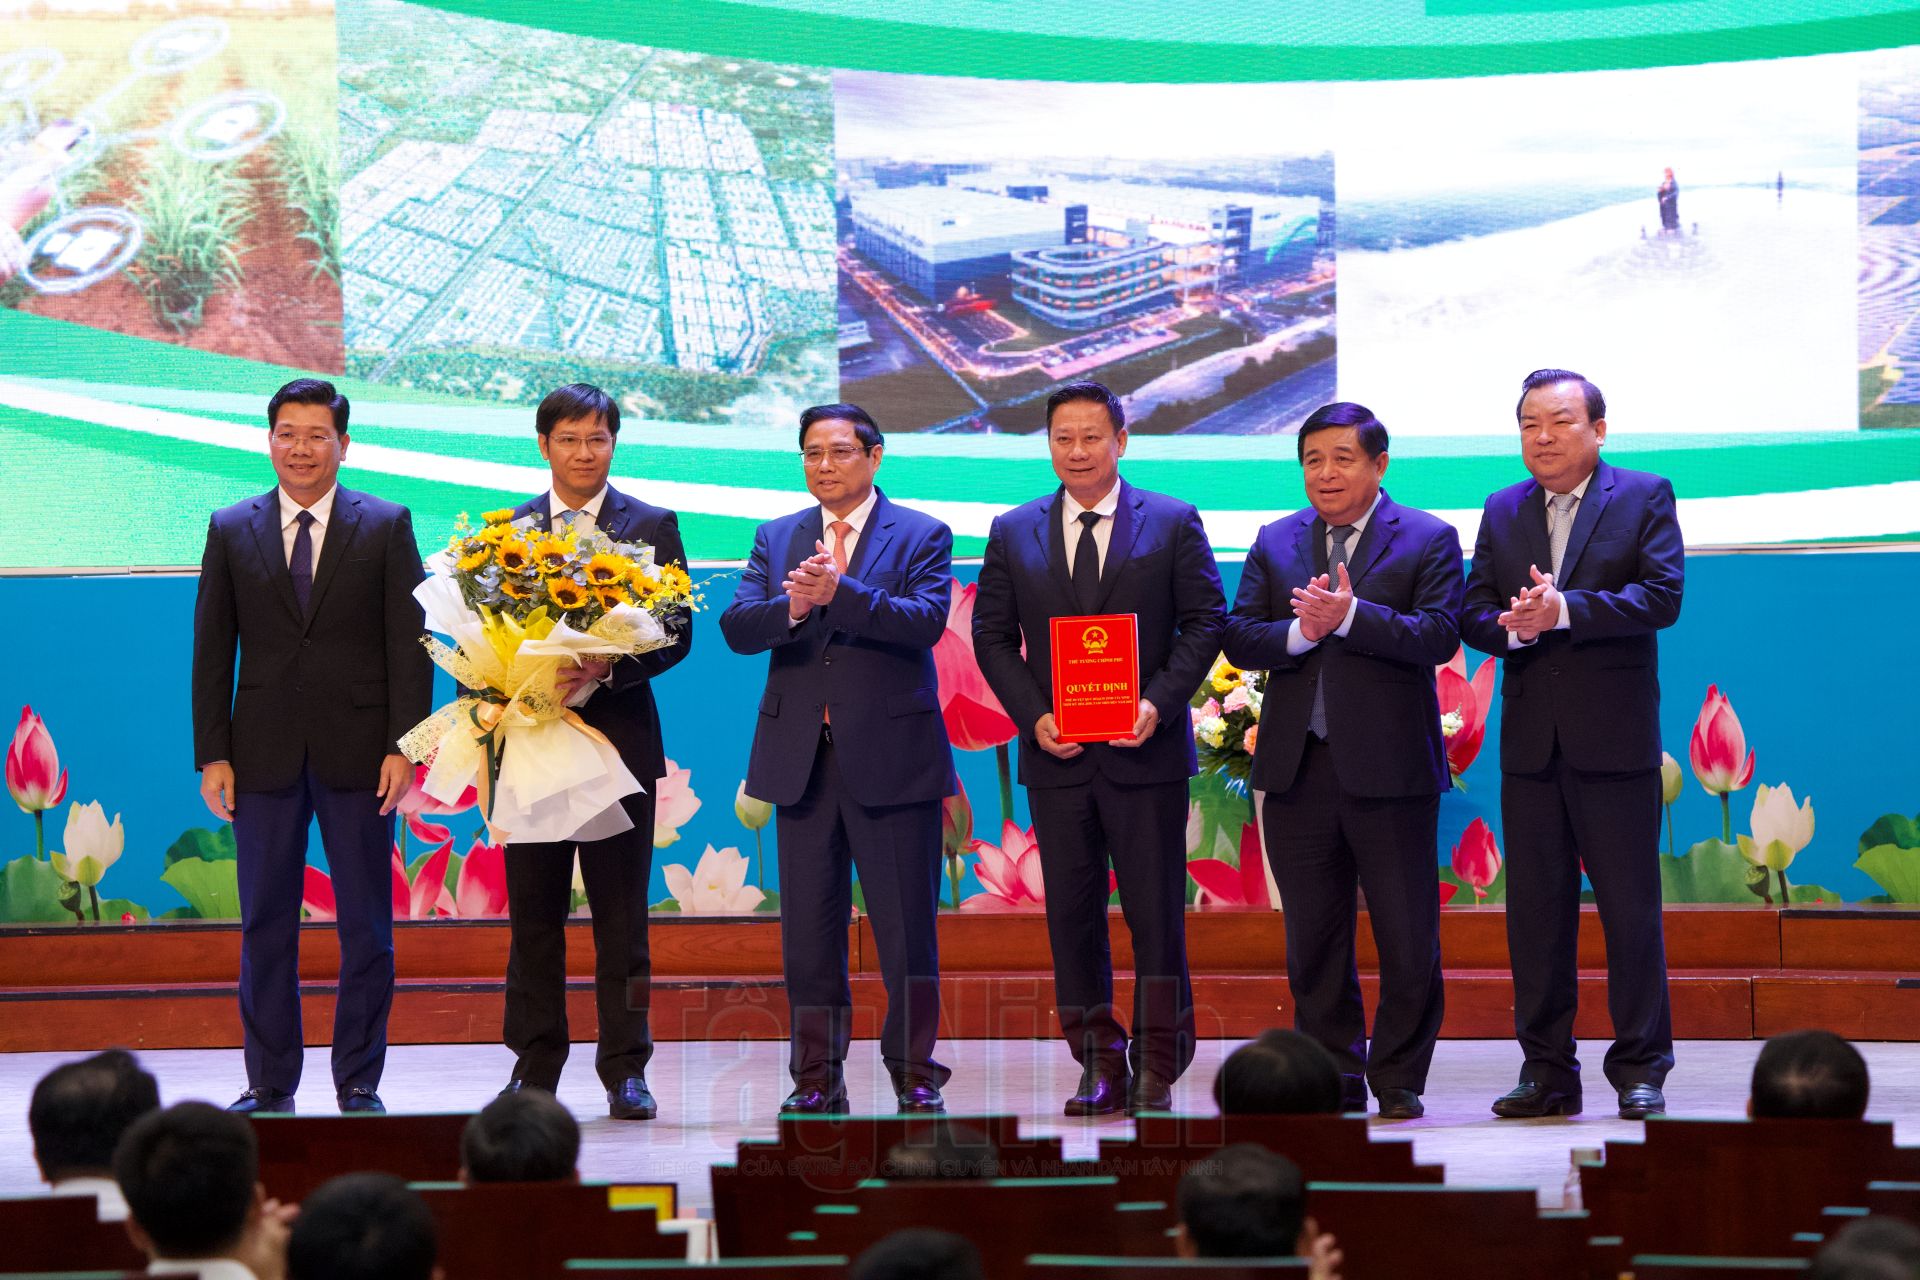 Thủ tướng Chính phủ Phạm Minh Chính tặng hoa chúc mừng tỉnh Tây Ninh và chụp hình lưu niệm cùng lãnh đạo Tỉnh uỷ, UBND tỉnh.